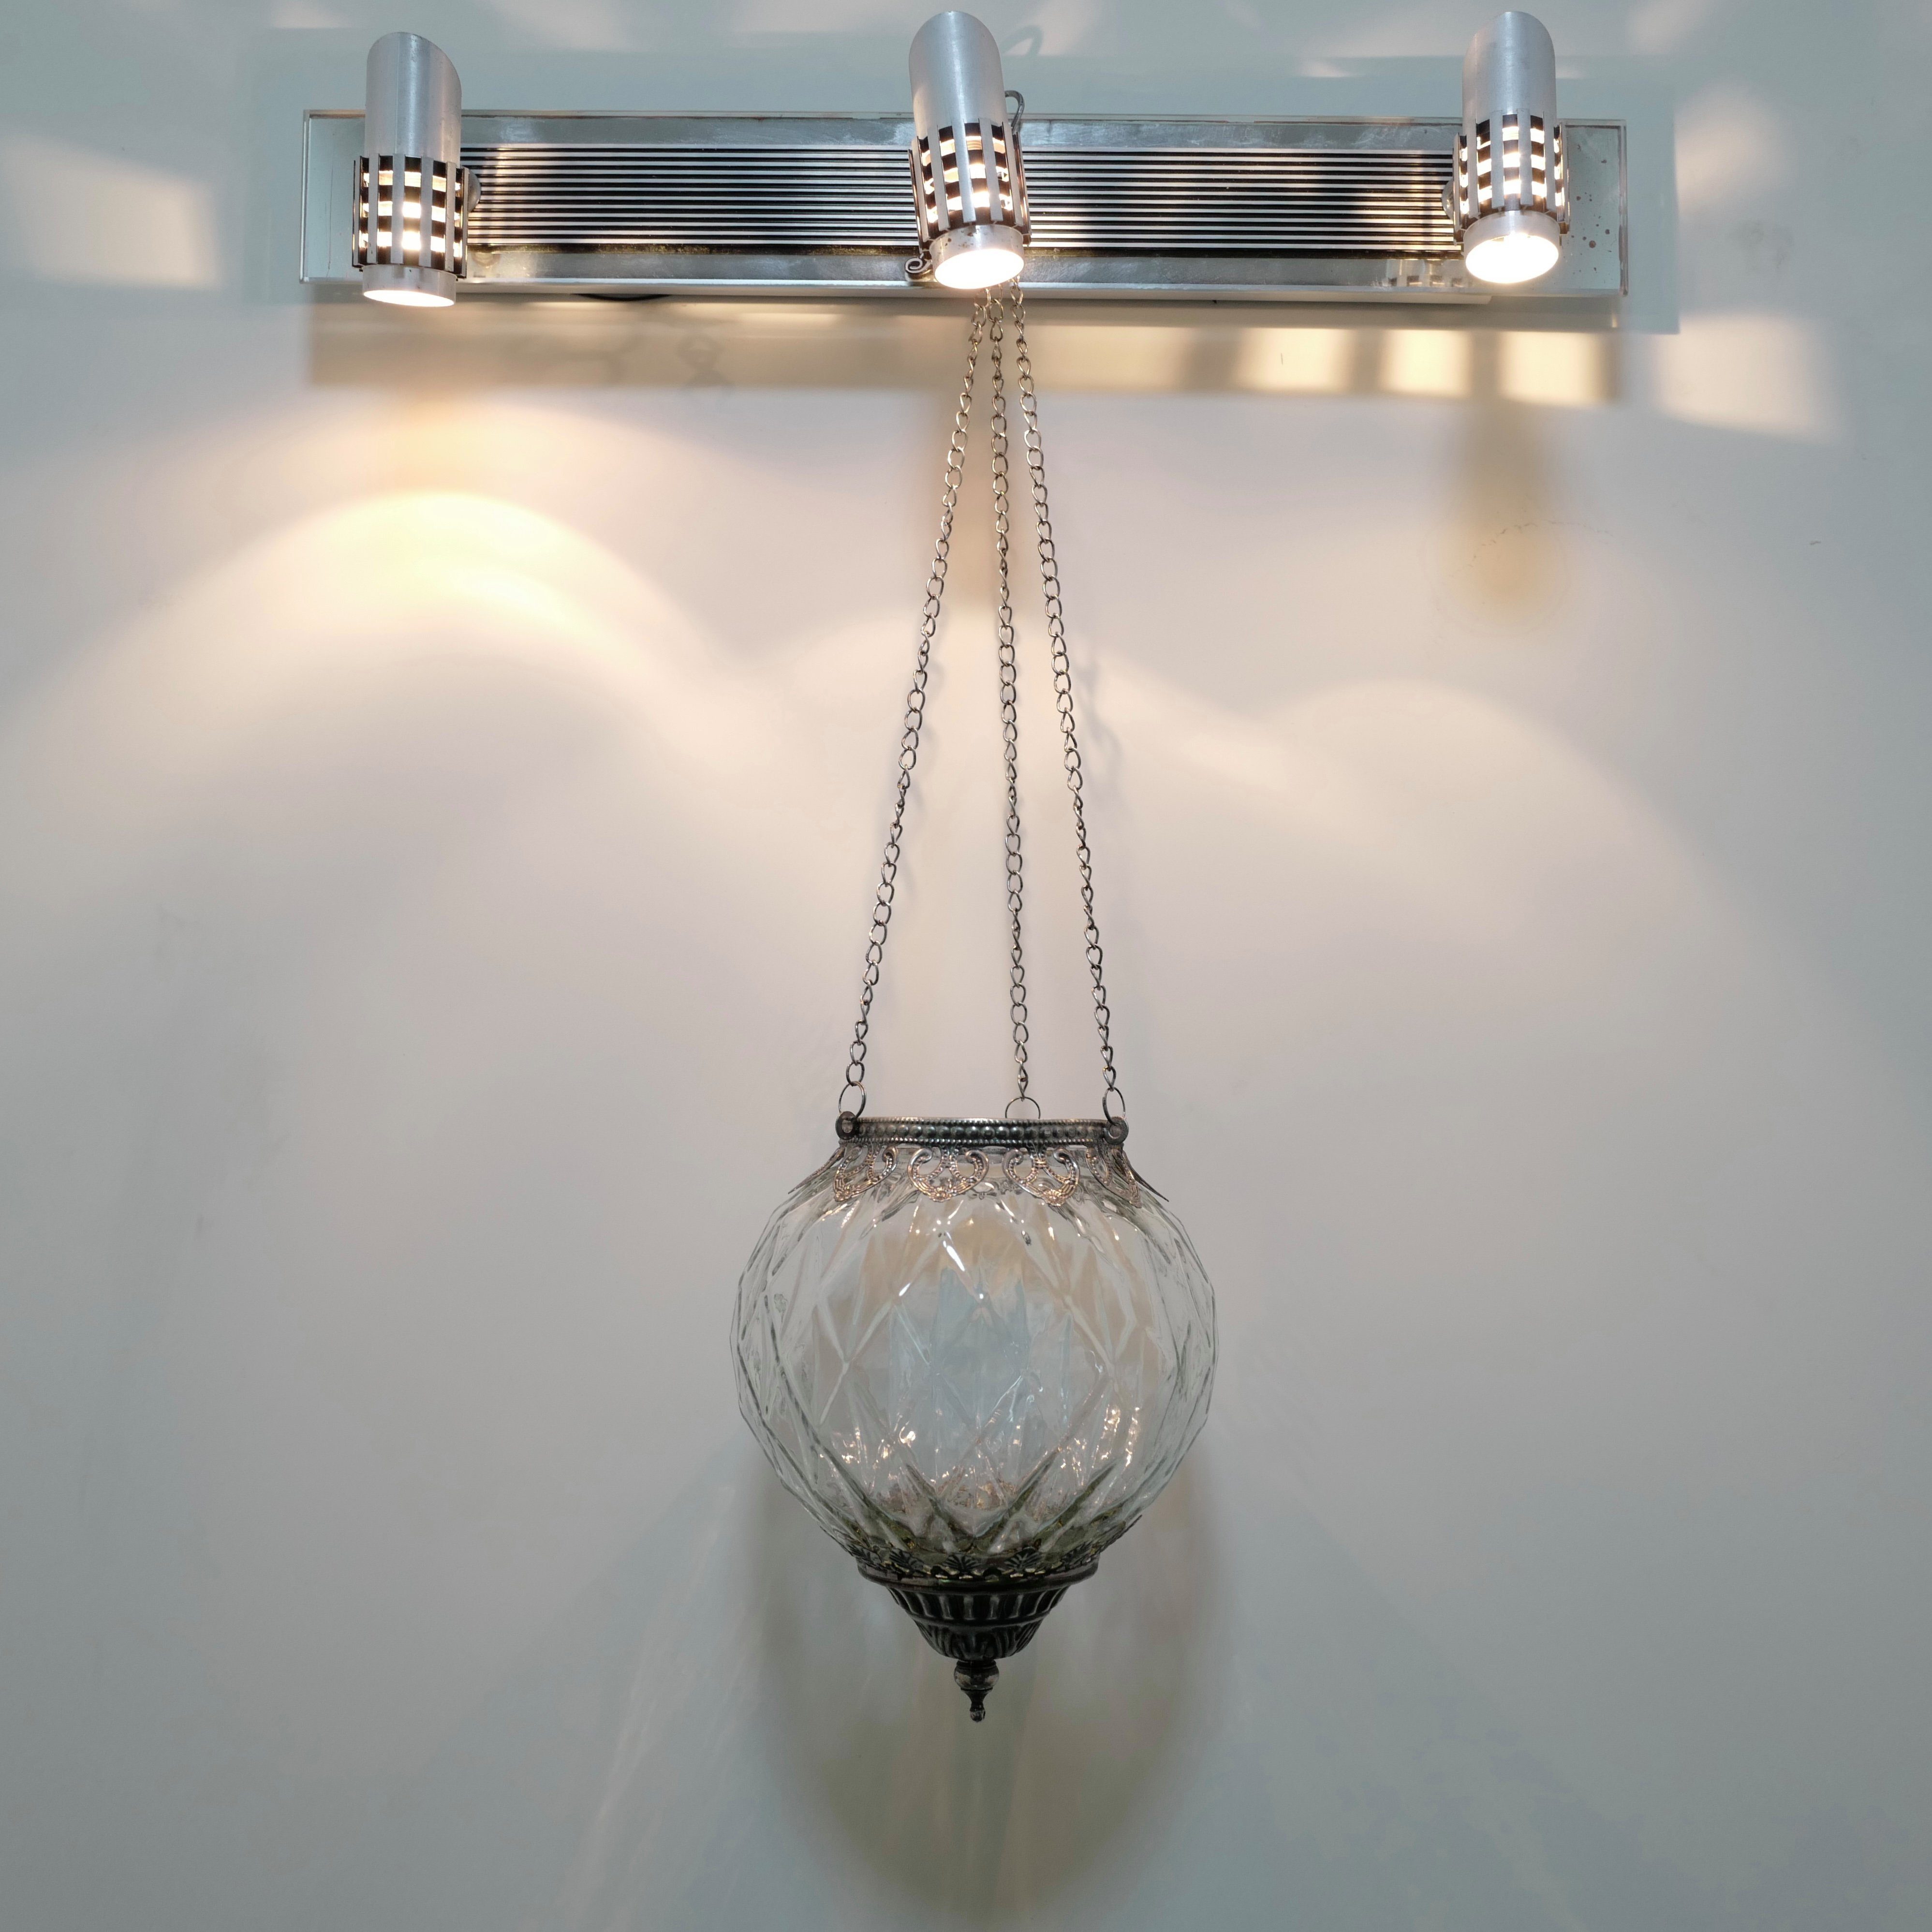 2 Vintage Deko Geschenke Teelichthalter Hängewindlicht Glas/Metall Blatt Transparent Hängewindlicht 4 aus